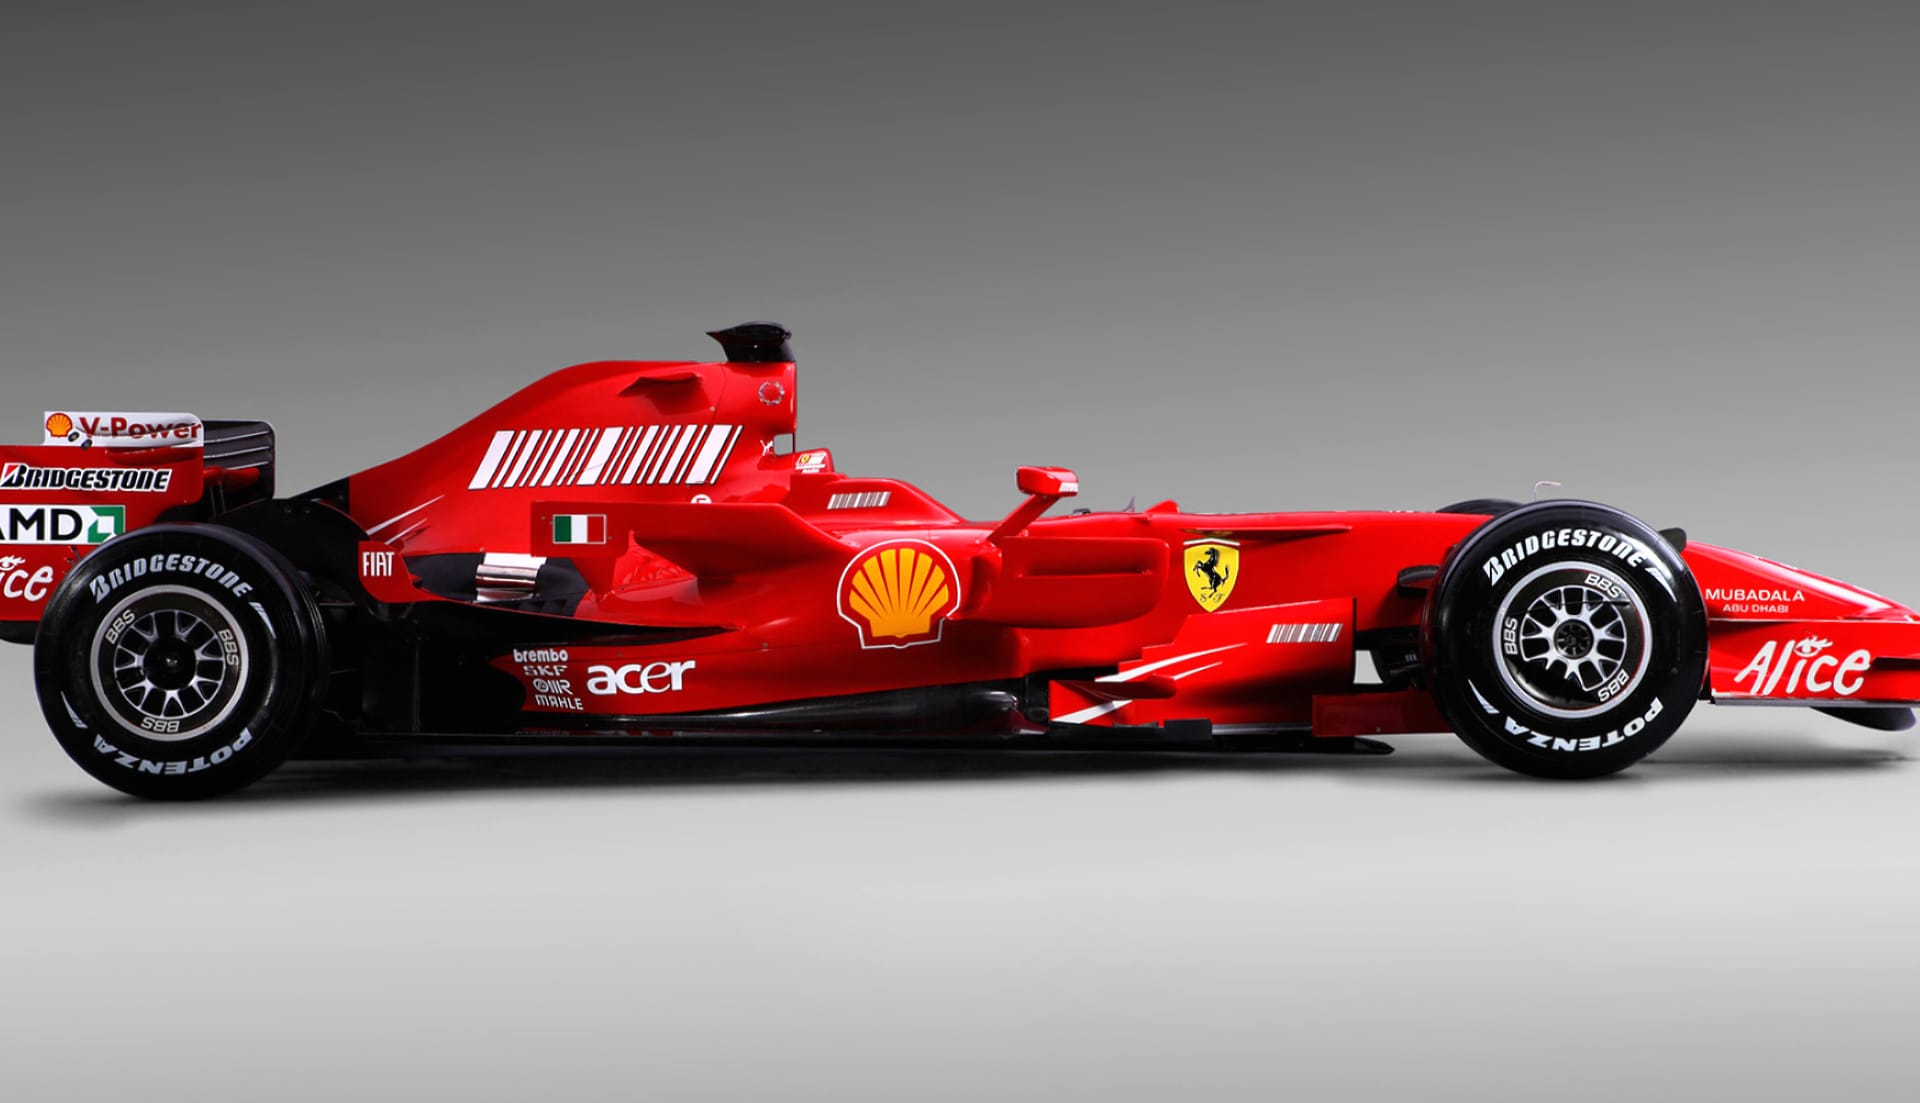 Ferrari F2008 at 1024 x 768 size wallpapers HD quality